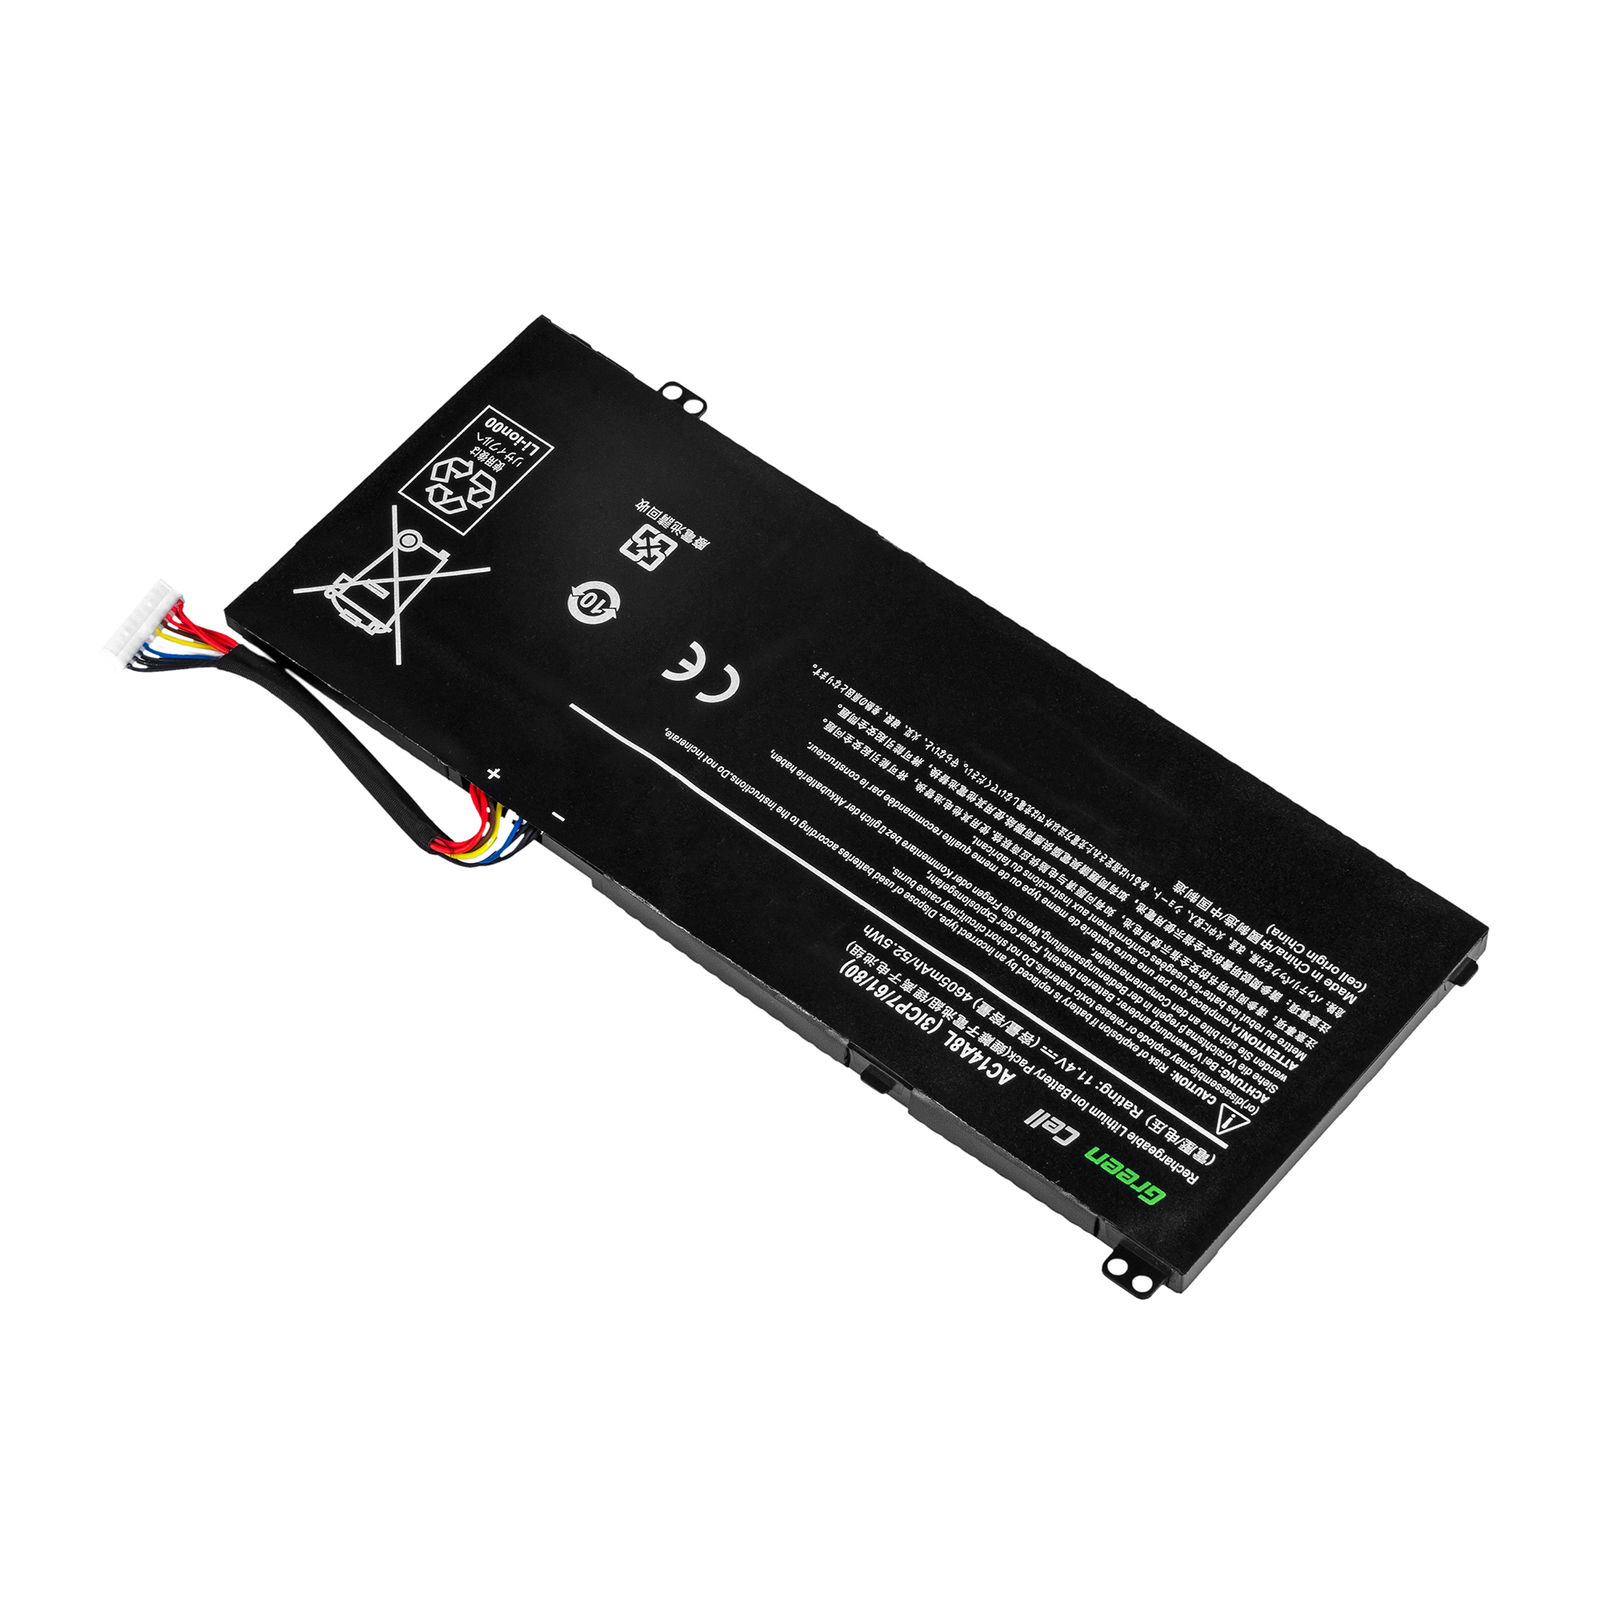 Acer Aspire V15 Nitro VN7-592G-7350 VN7-592G-76W7 VN7-592G-76XN kompatibelt batterier